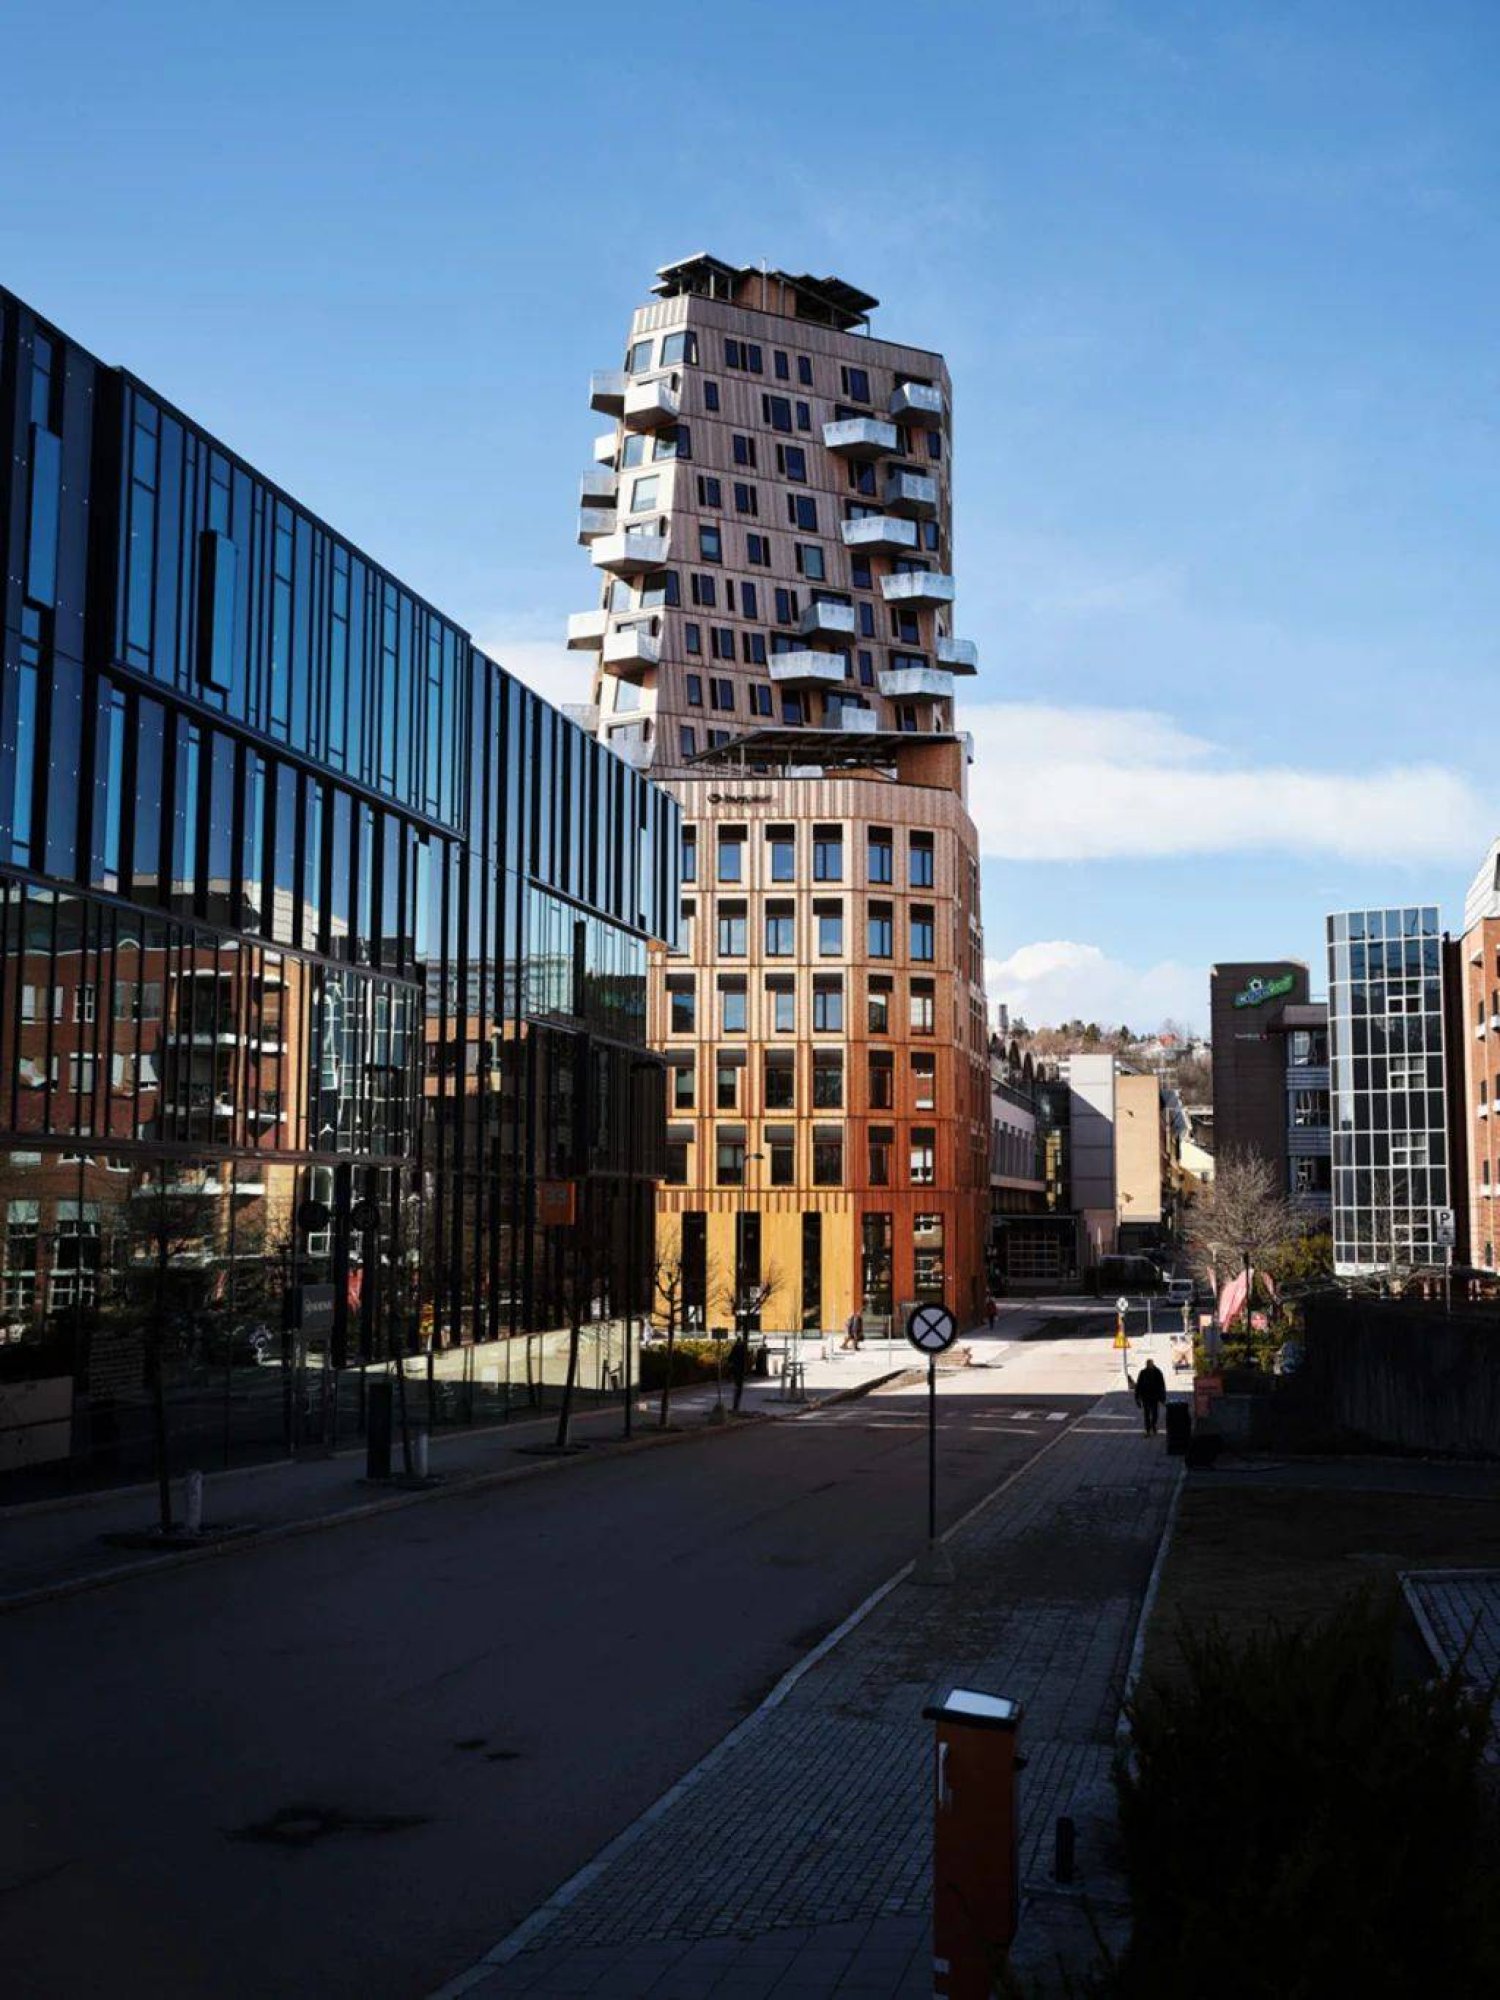 مبنى رائع في أوسلو من دون تبريد أو تدفئة أو تهوية